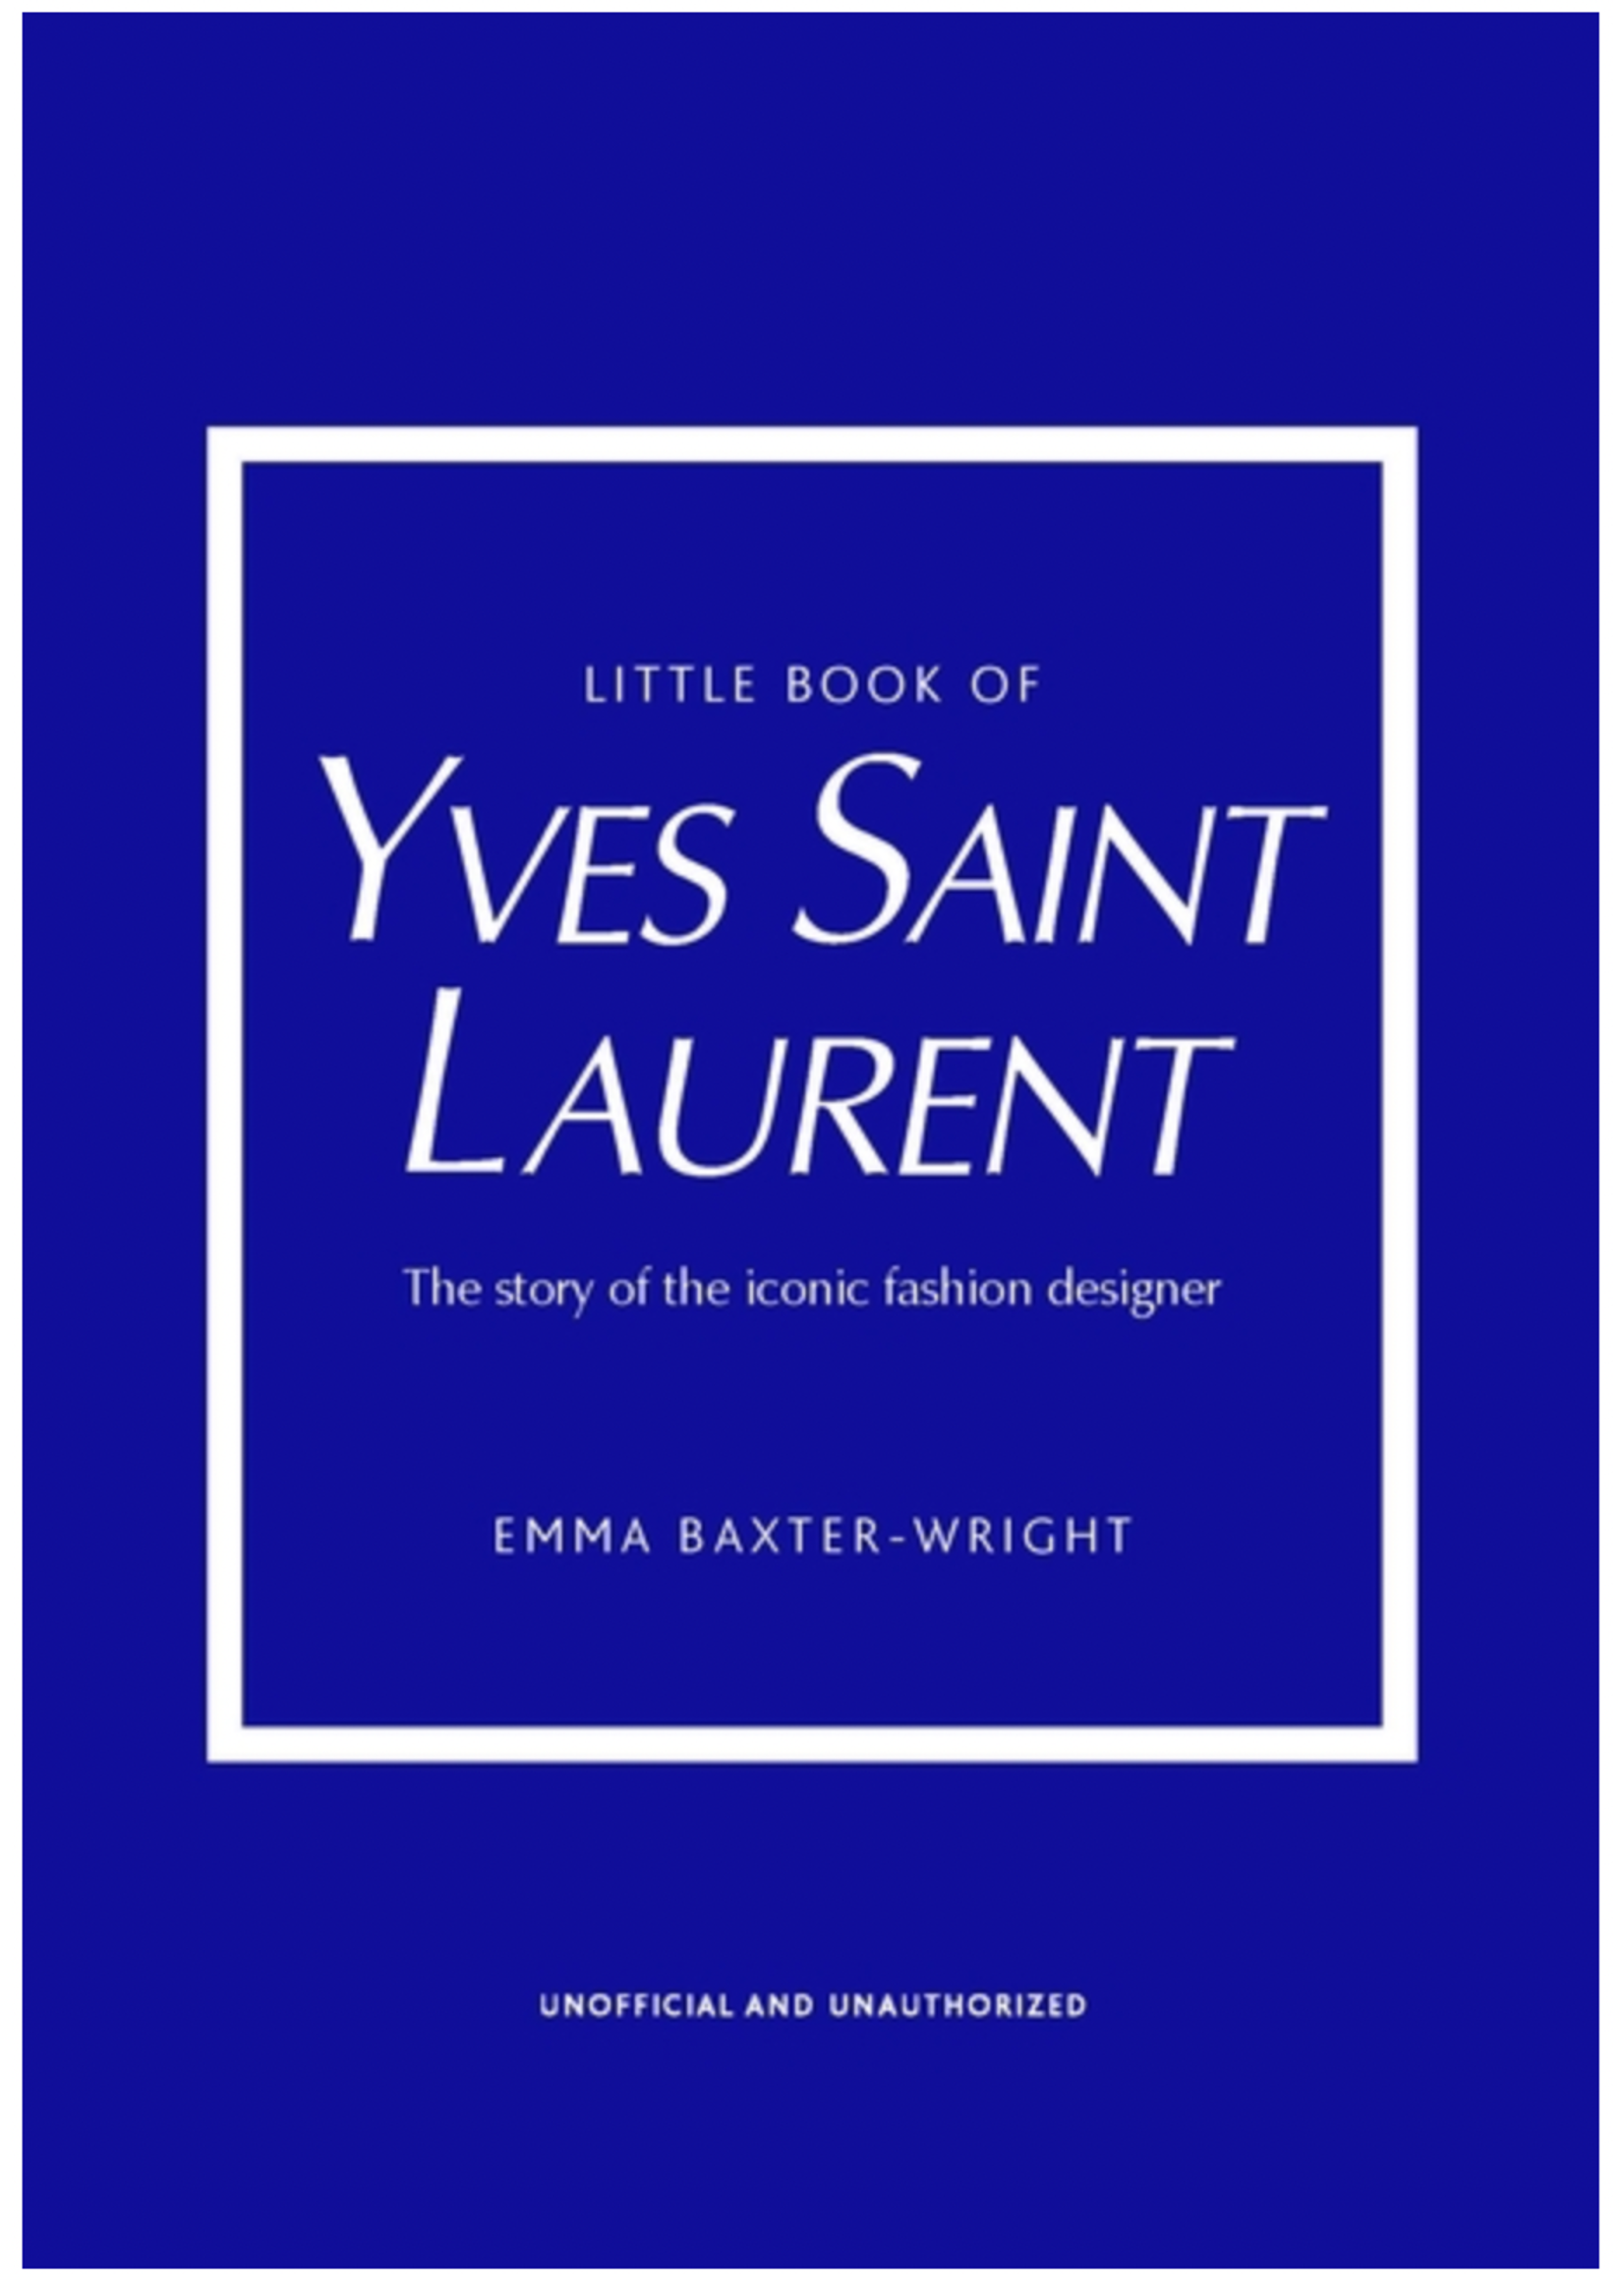 Little Book of Yves St Laurent